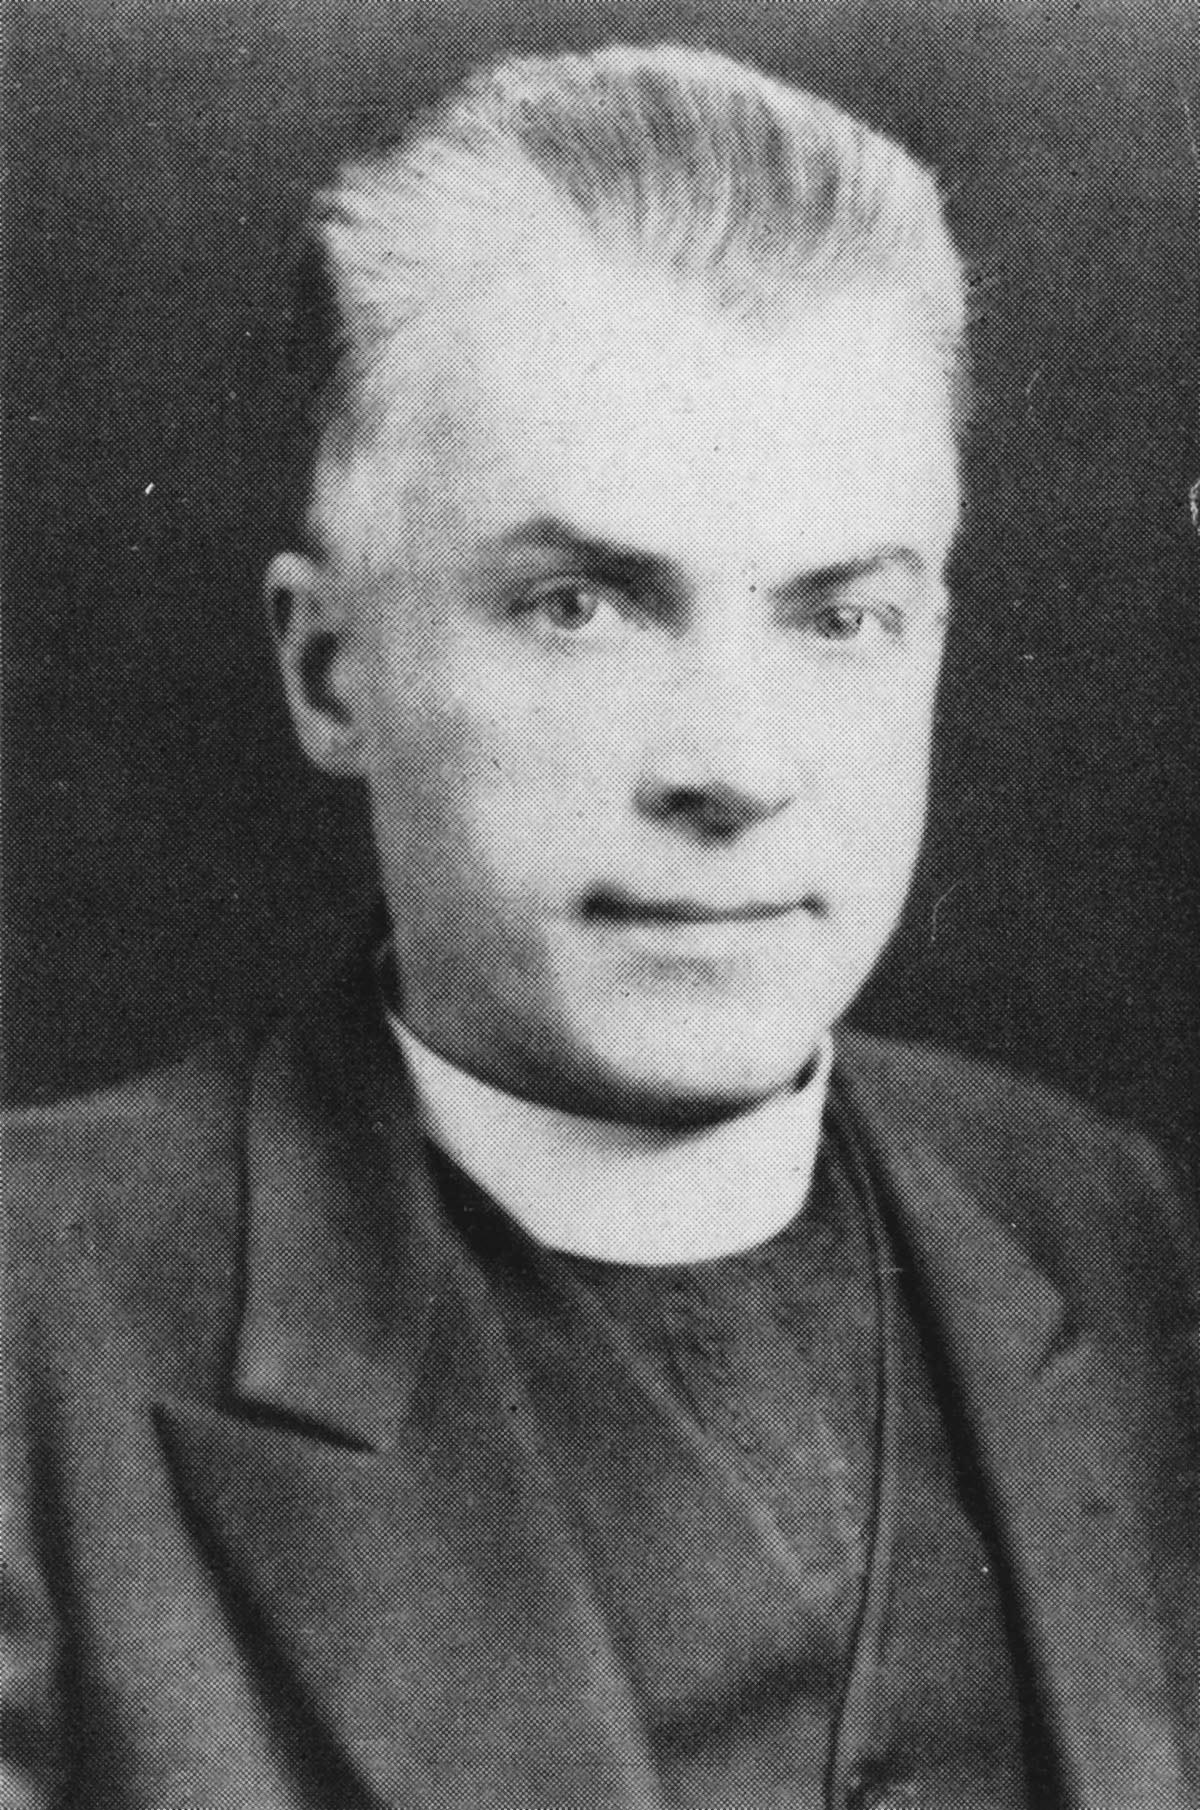 Rev. Paul Procko